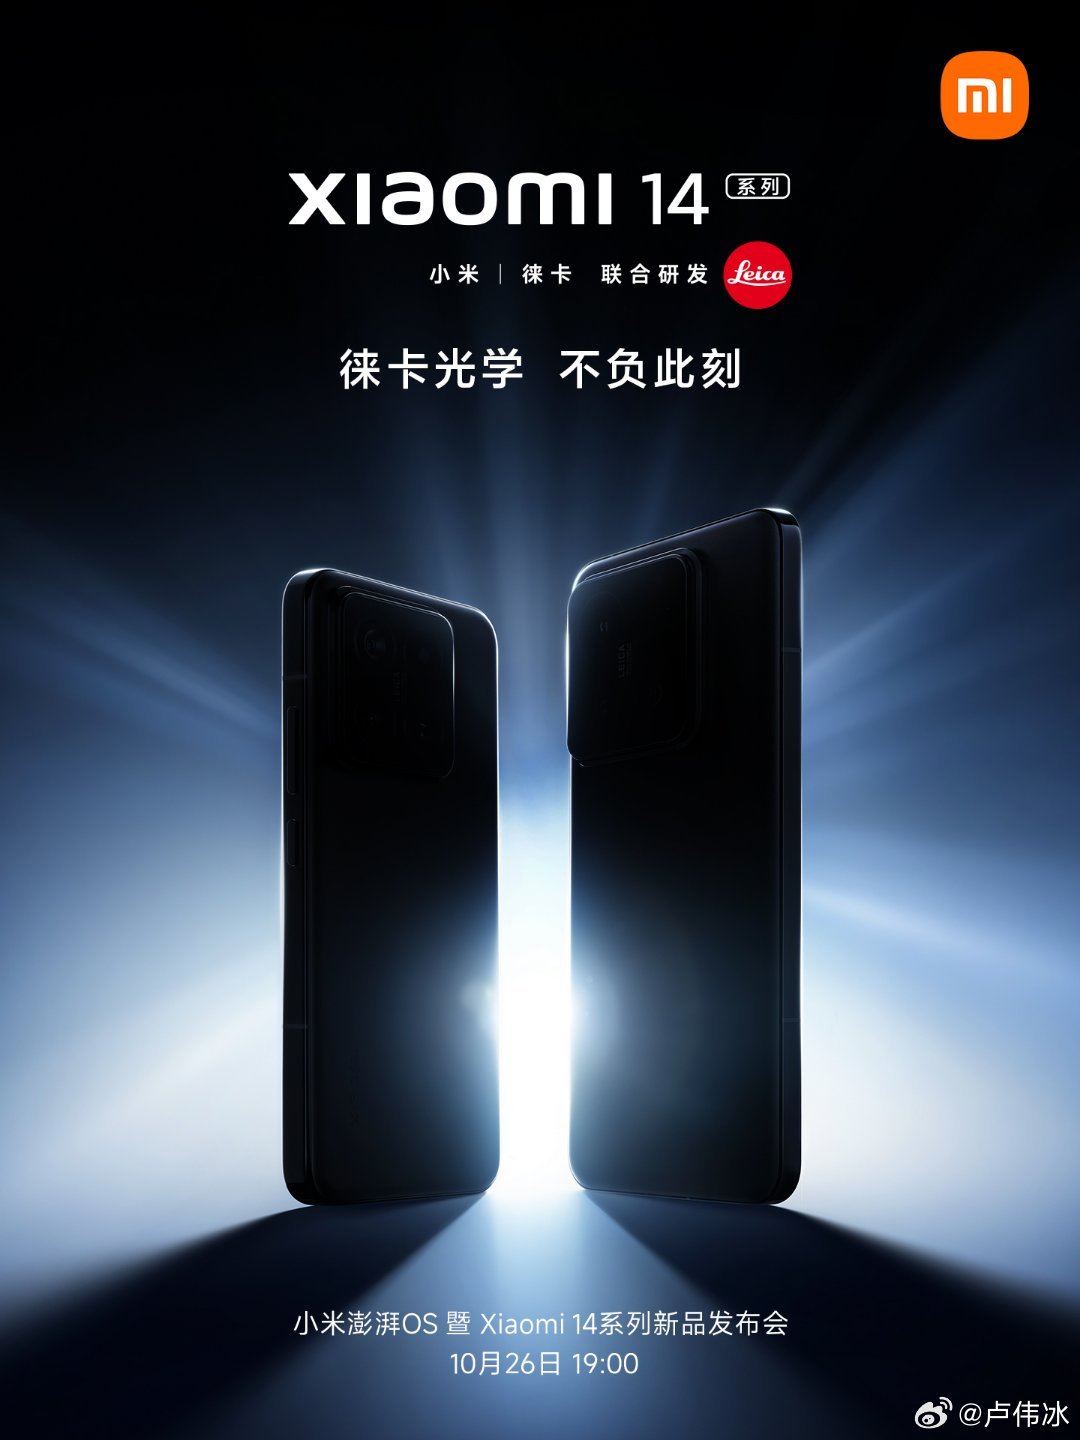 Xiaomi 14 Pro looks incredible